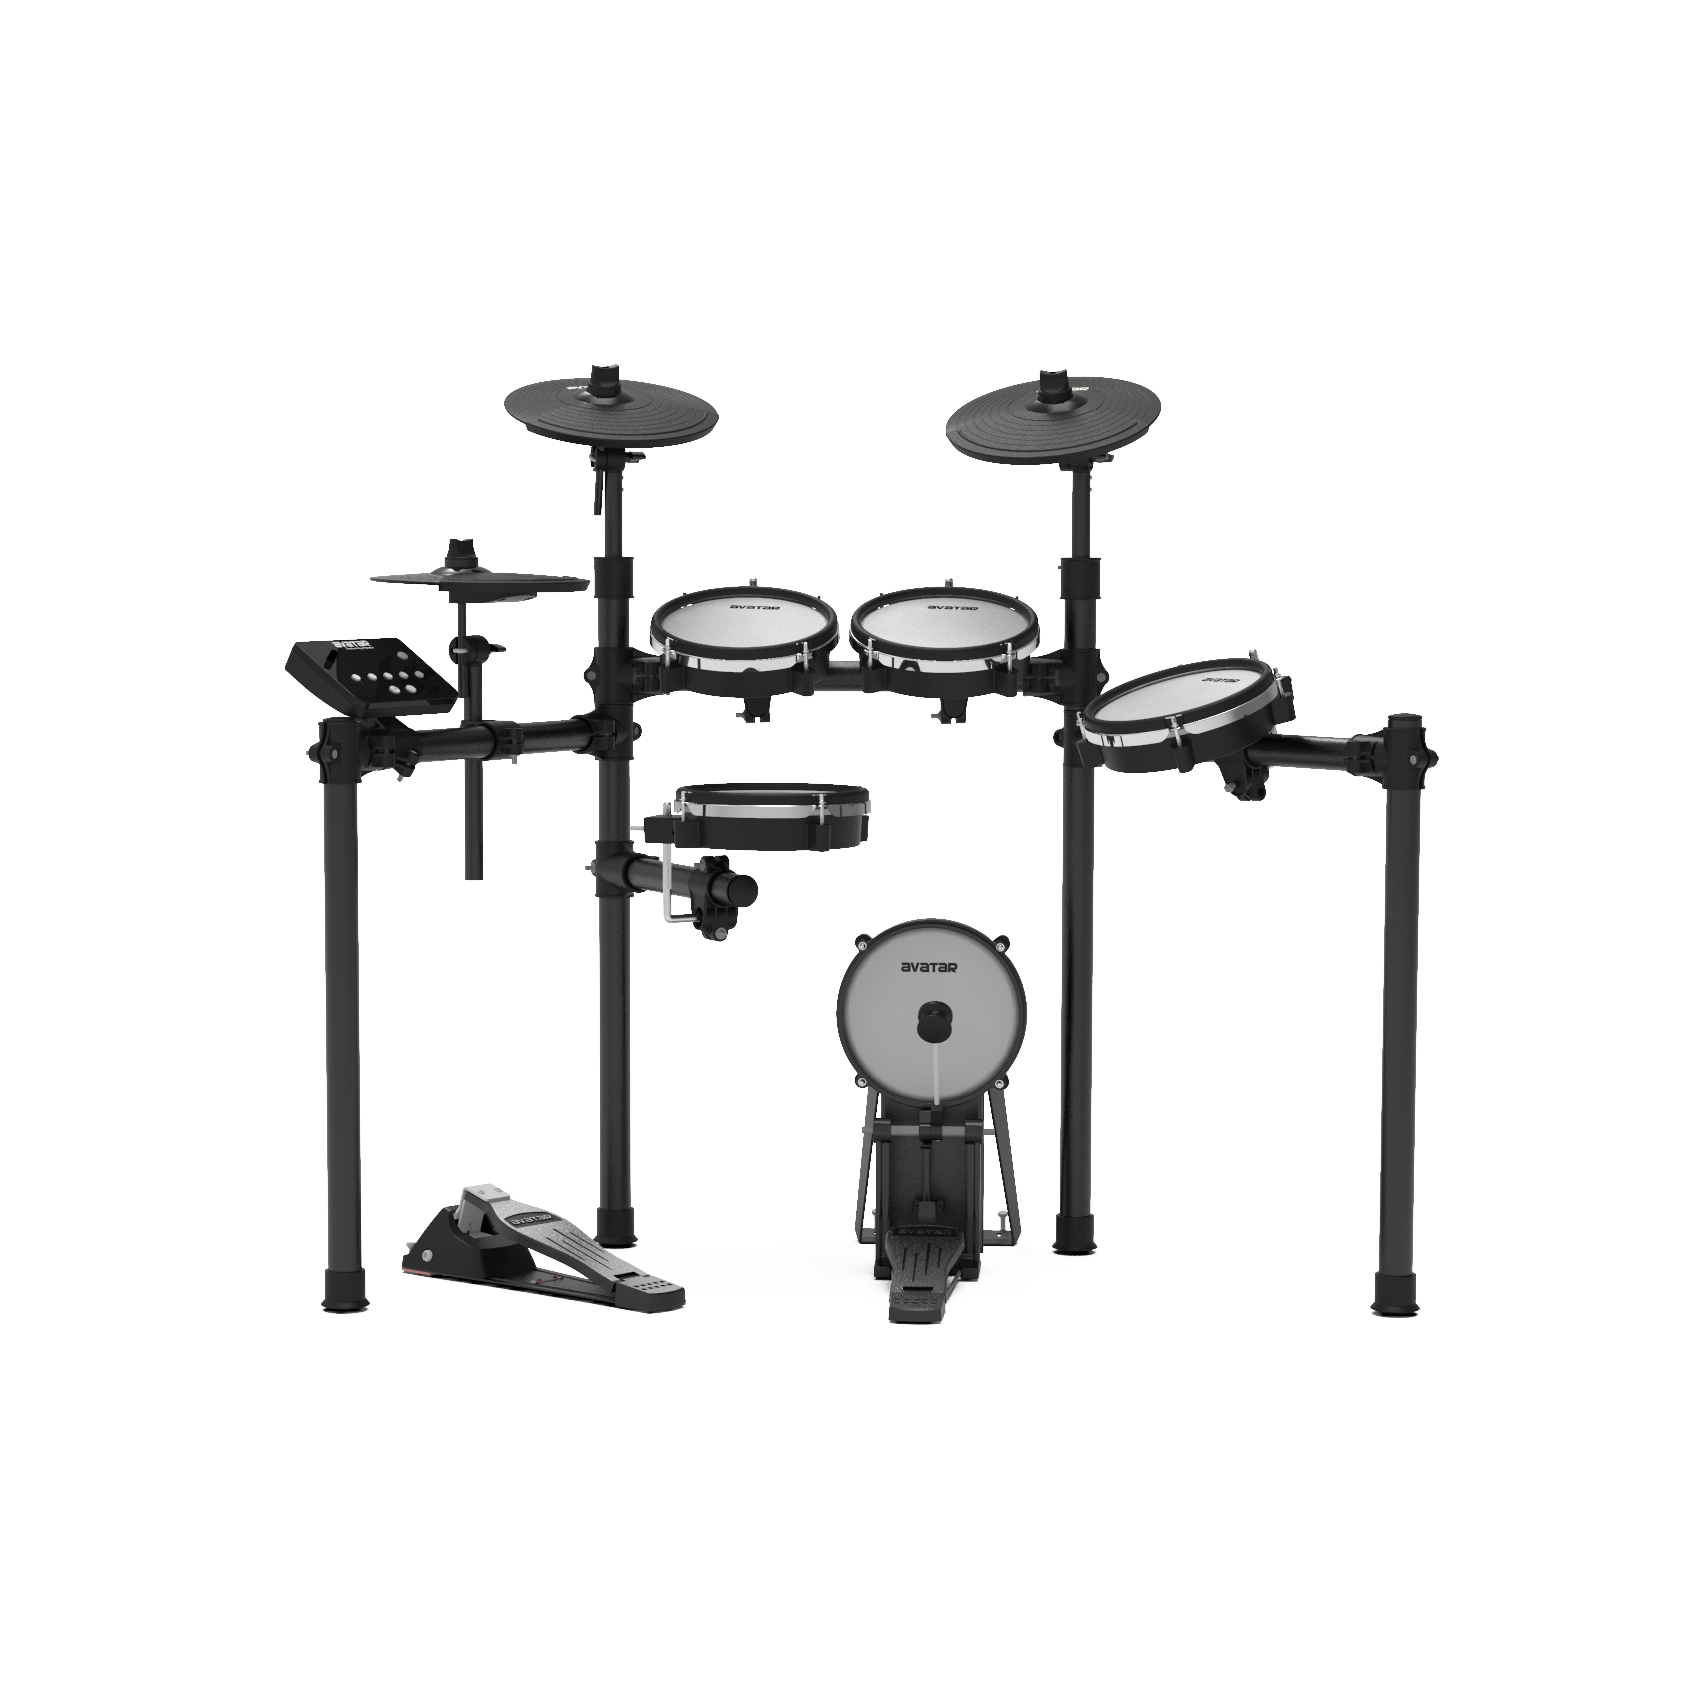 Avatar SD61-6 Digital Drum Mesh Head 8pcs (5pcs Drum Pad, 3pcs Cymbal Pad) W/Drum Throne, Superlux HD572, Drumsticks